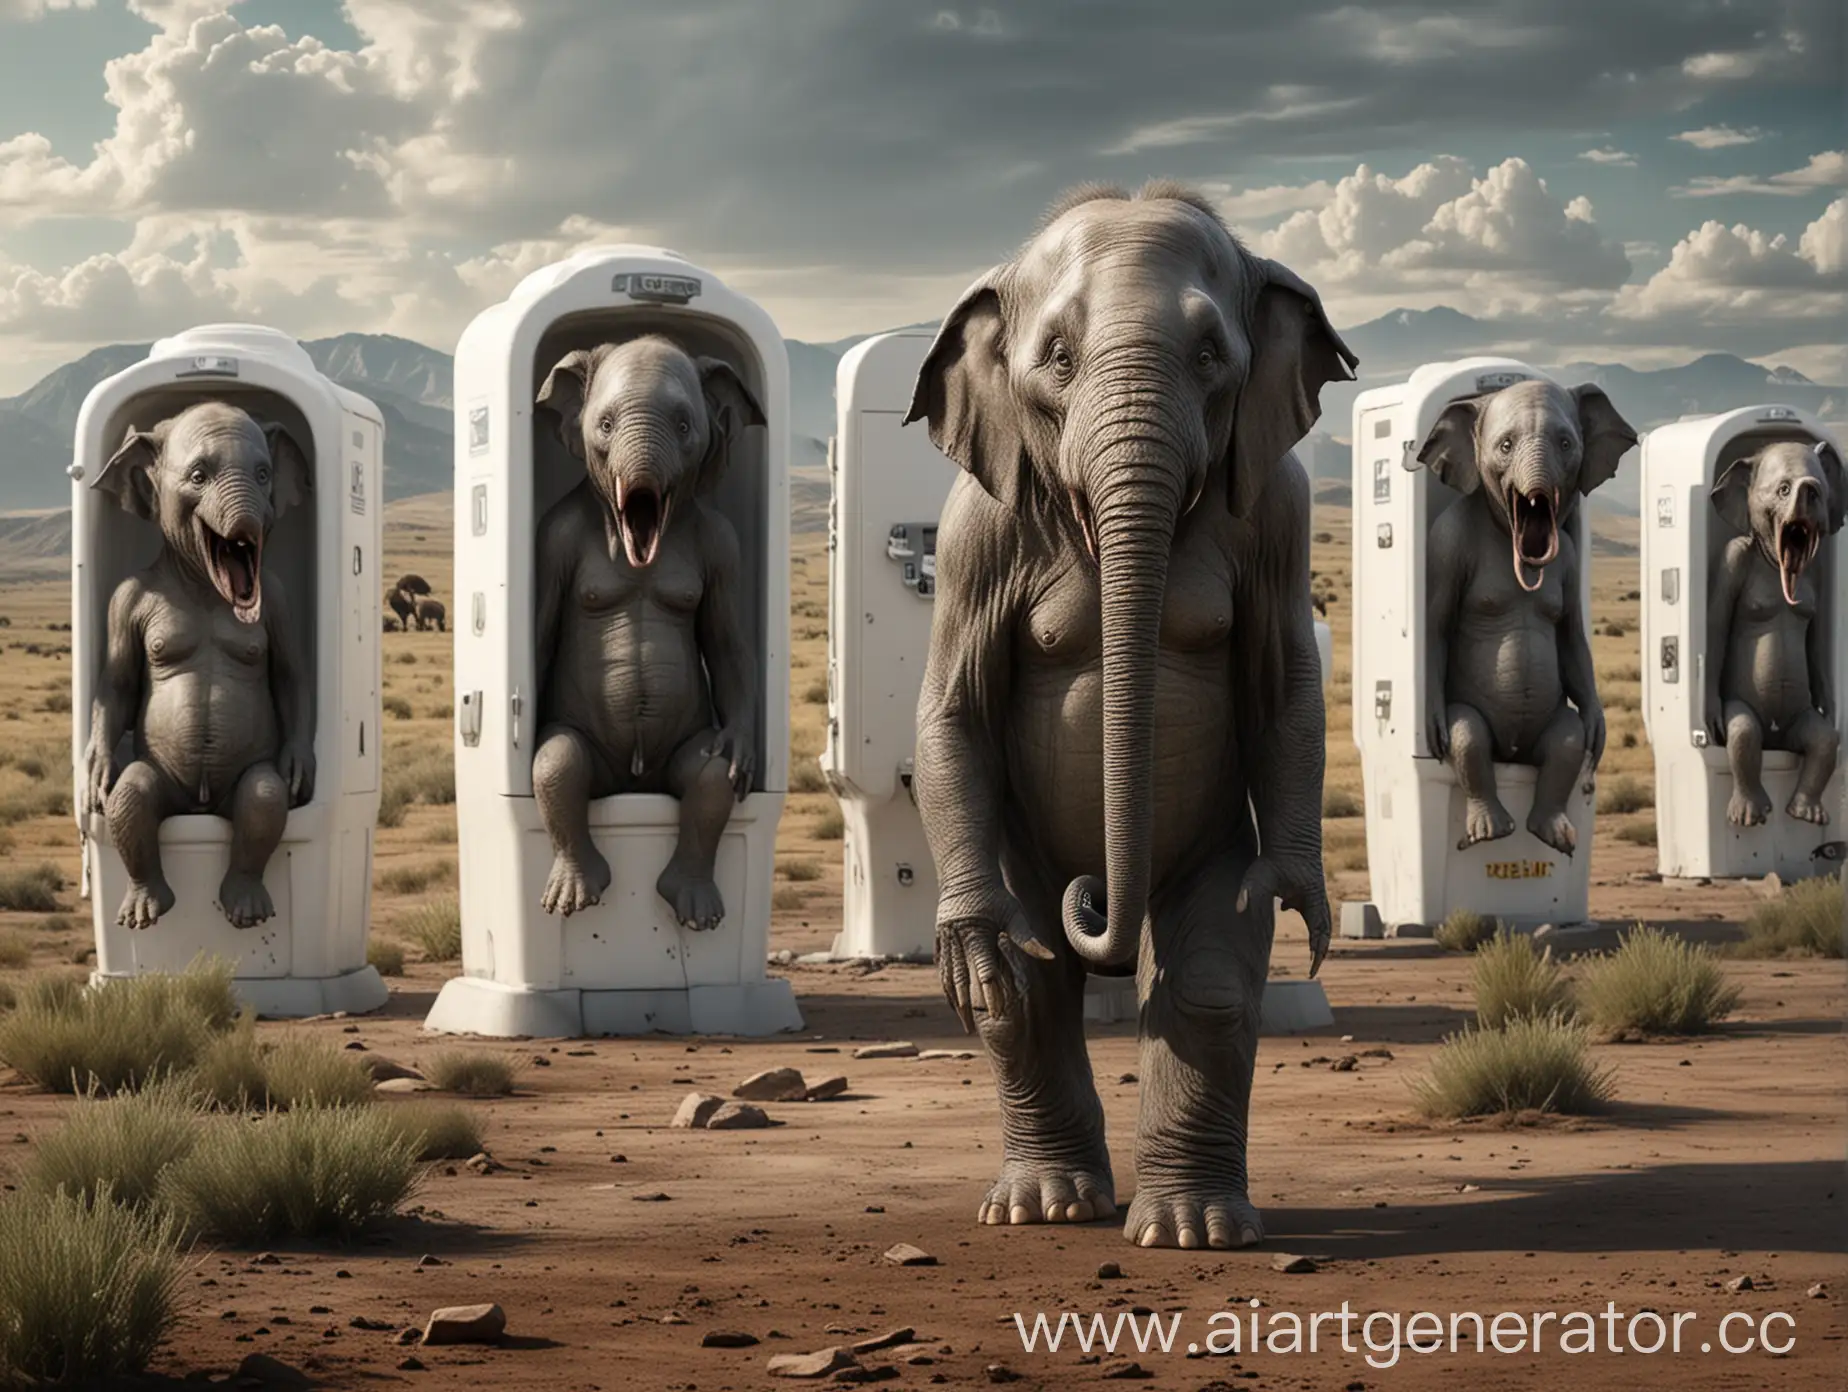 создай пожалуйста изображение, на котором все версии джокера объединяются со скибиди туалетами и нападают на северную дакоту, где живут только медведи, слоны и трехметровые инопланетяне из фильма ET